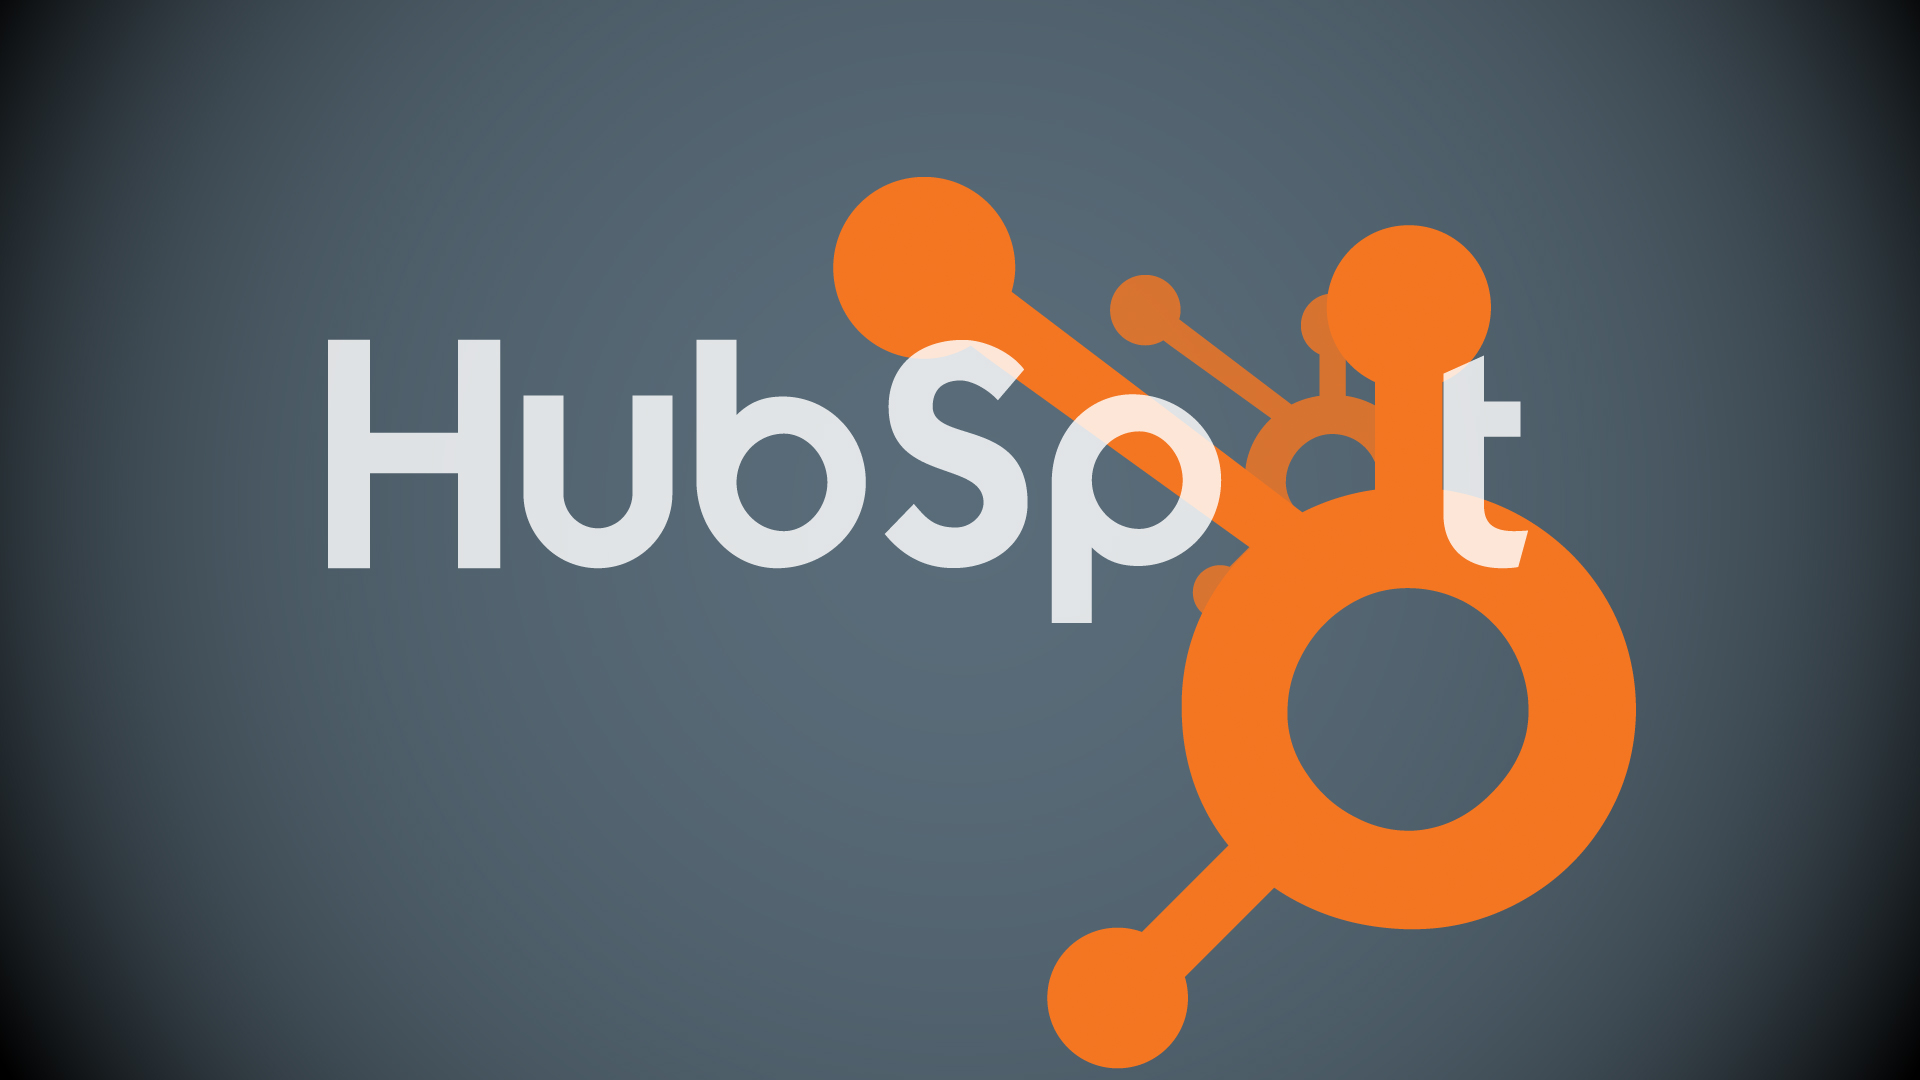 Hubspot Review